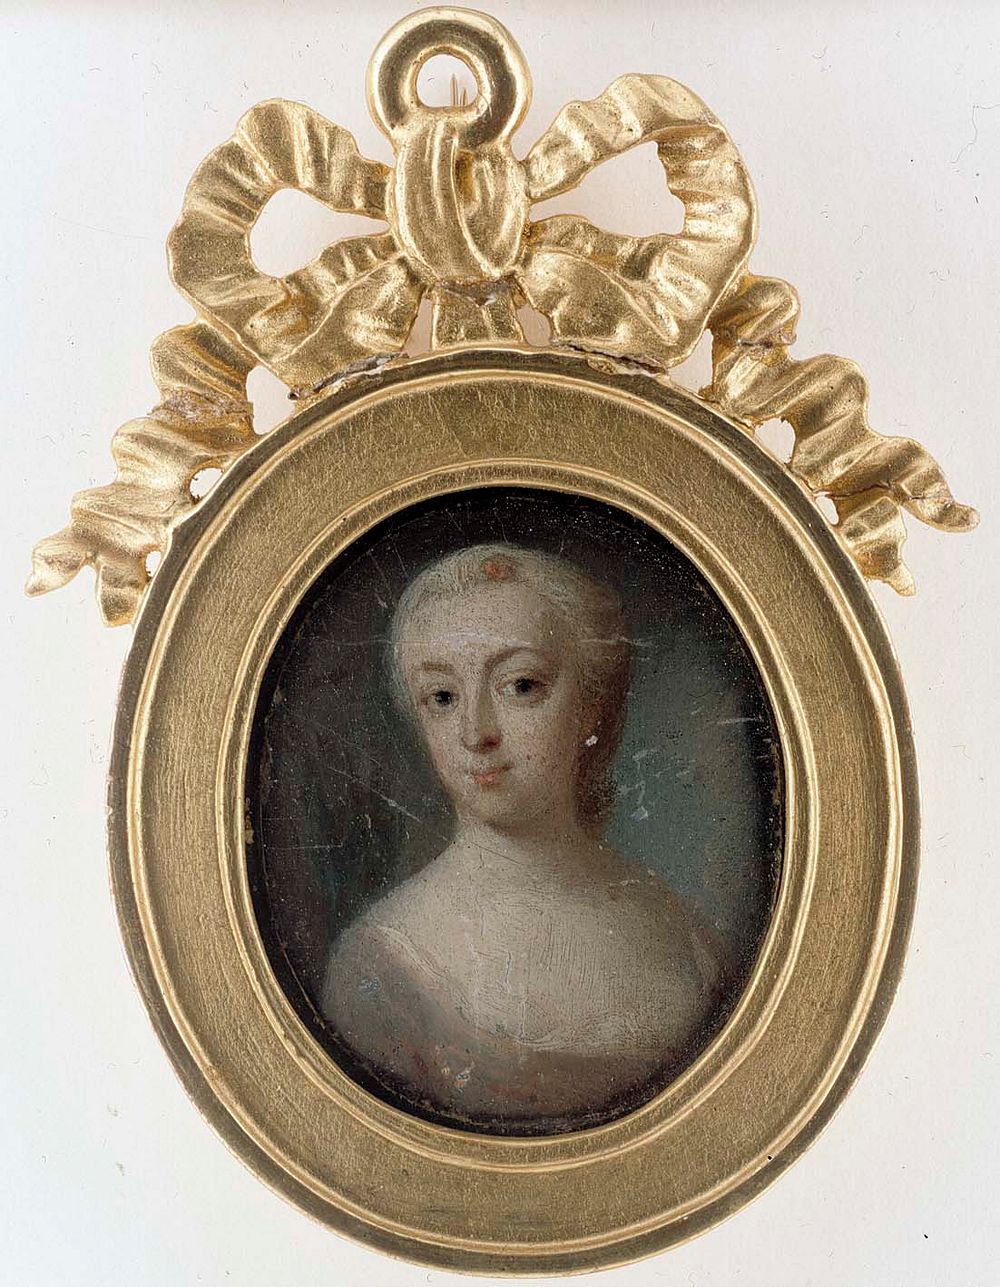 Madam eva ekeblad, 1739 - 1766